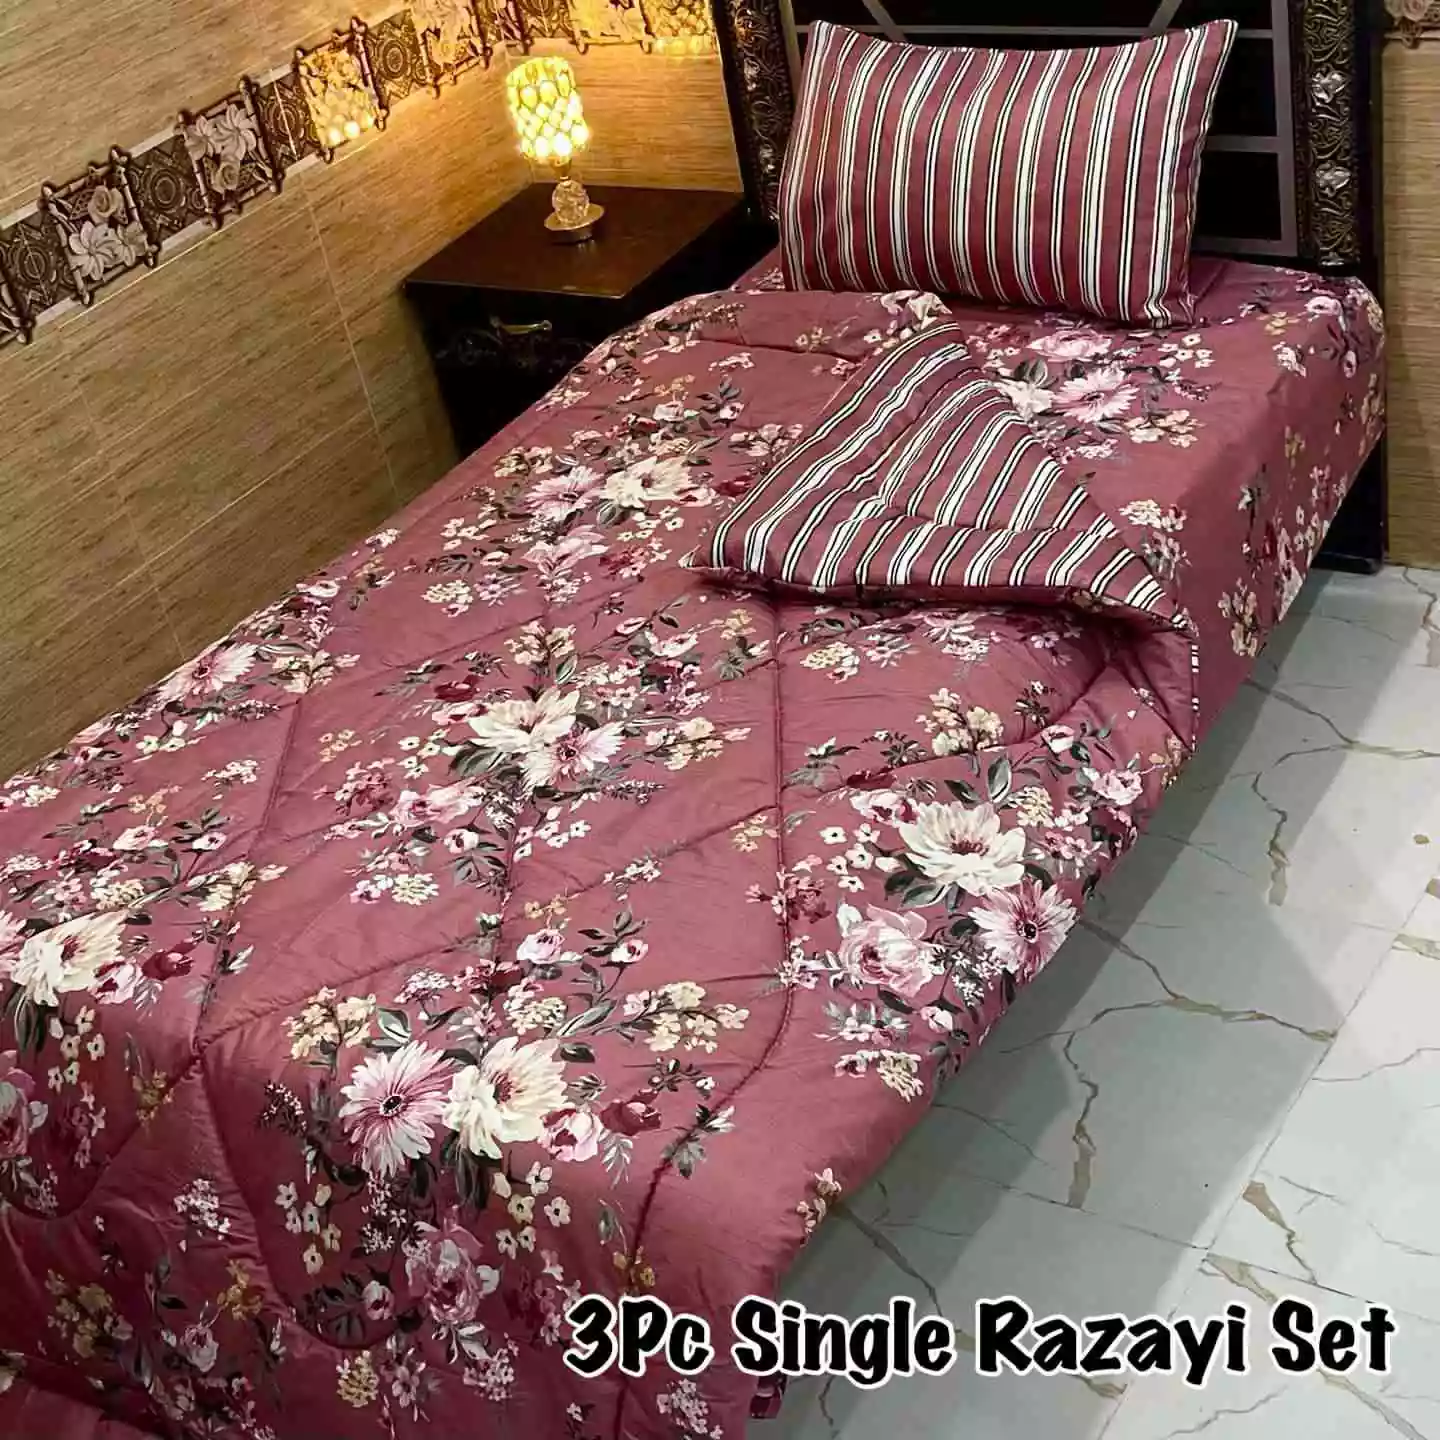 DF-VRSSB-5: DFY 3Pc Single Bed Vicky Razai Set